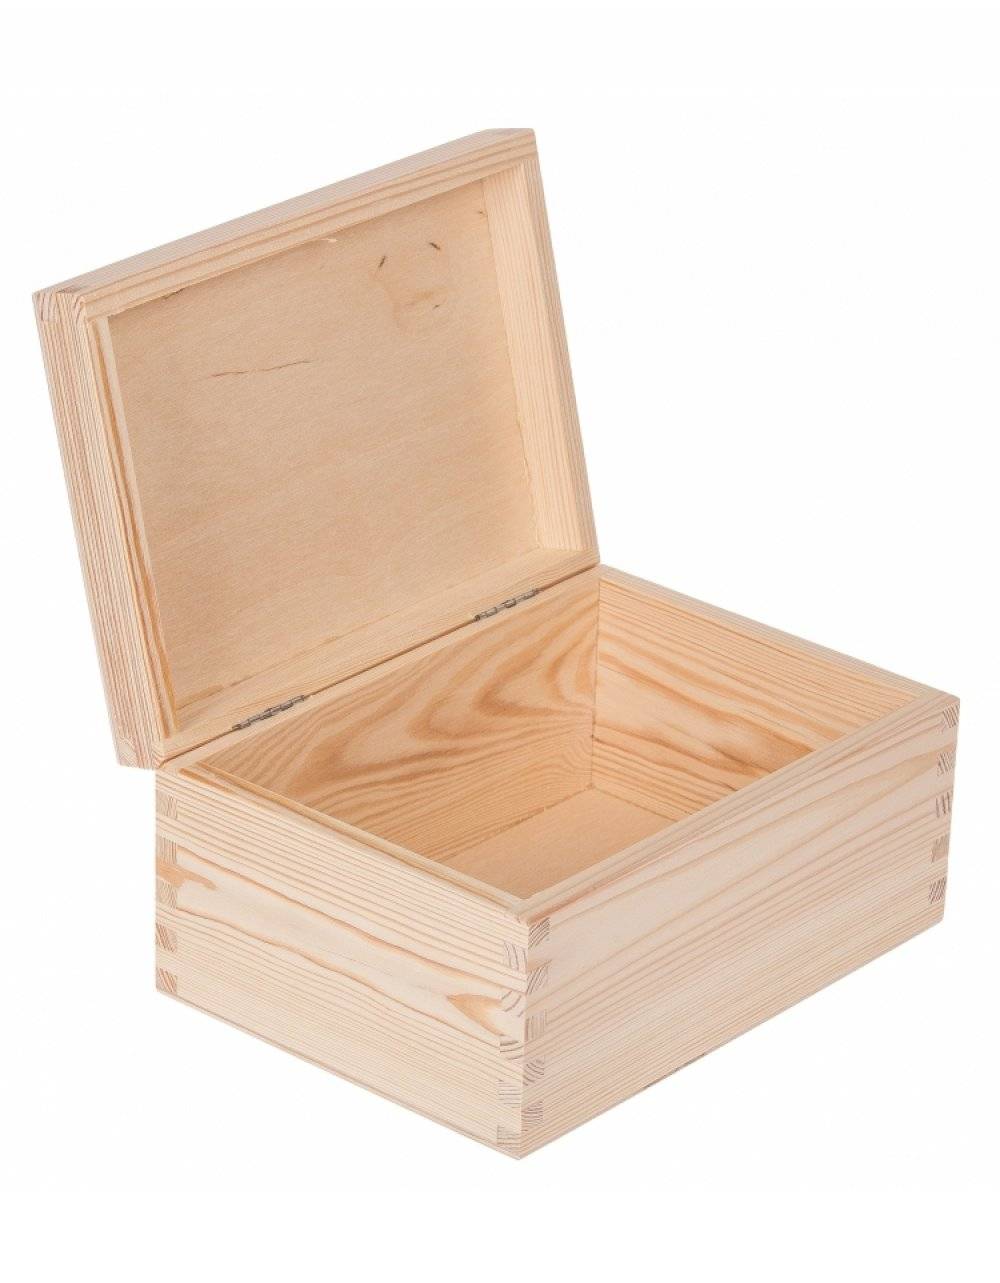 Přírodní dřevěná krabička 22x16x10 cm